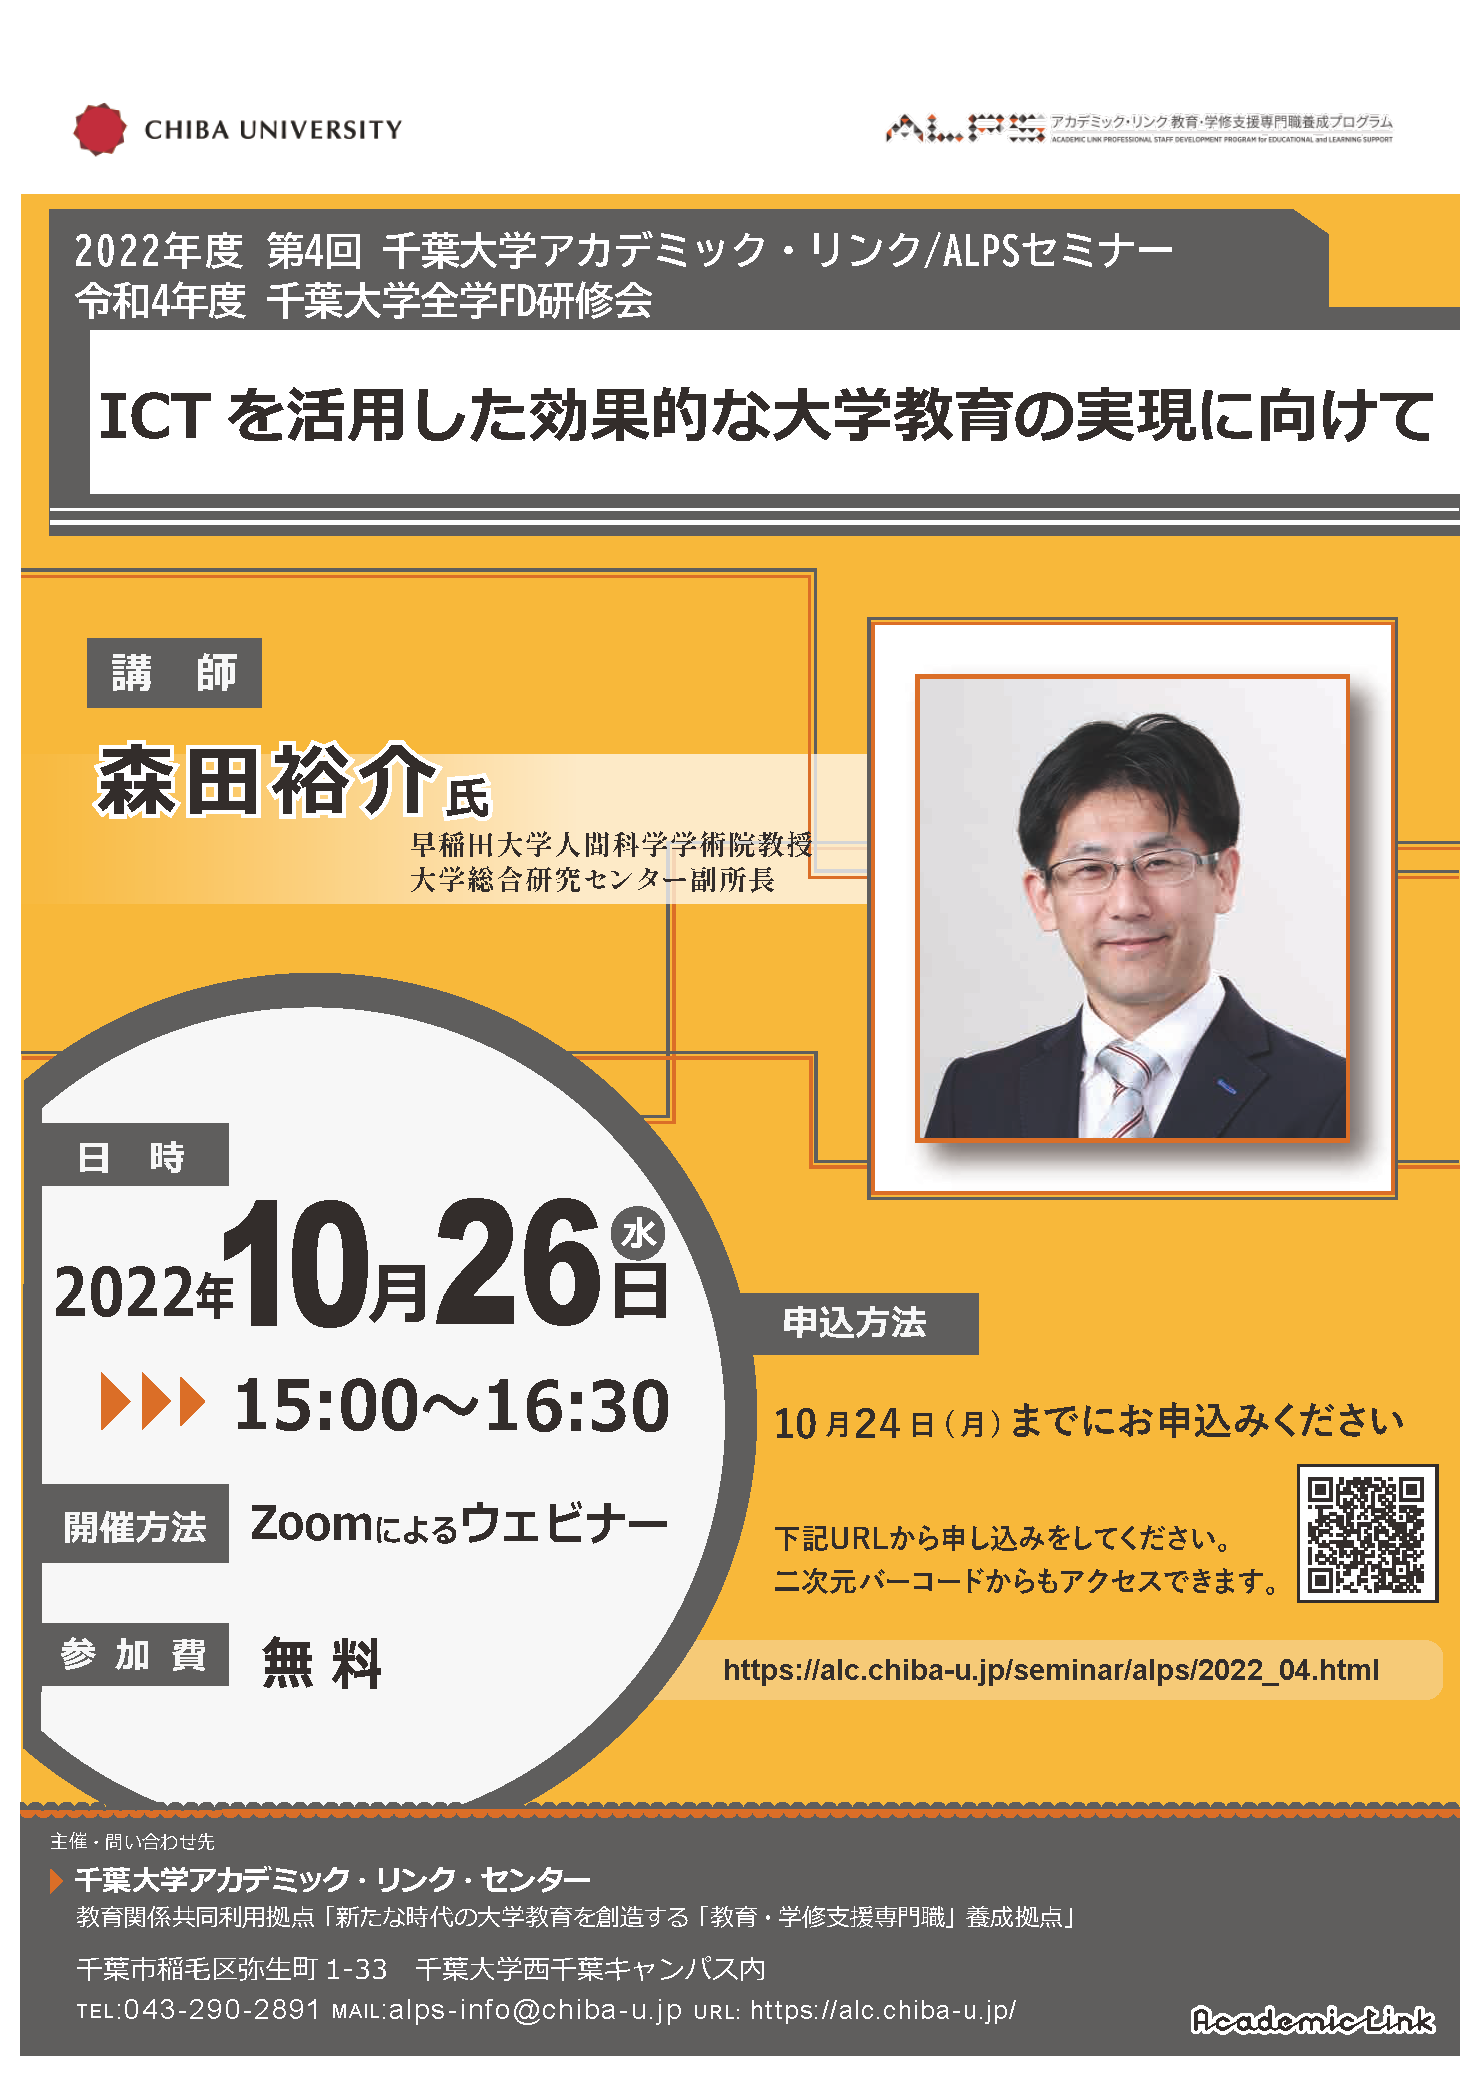 ICTを活用した効果的な大学教育の実現に向けて （千葉大学アカデミック・リンク・セミナー/ALPSセミナー 2022年度 No.4）